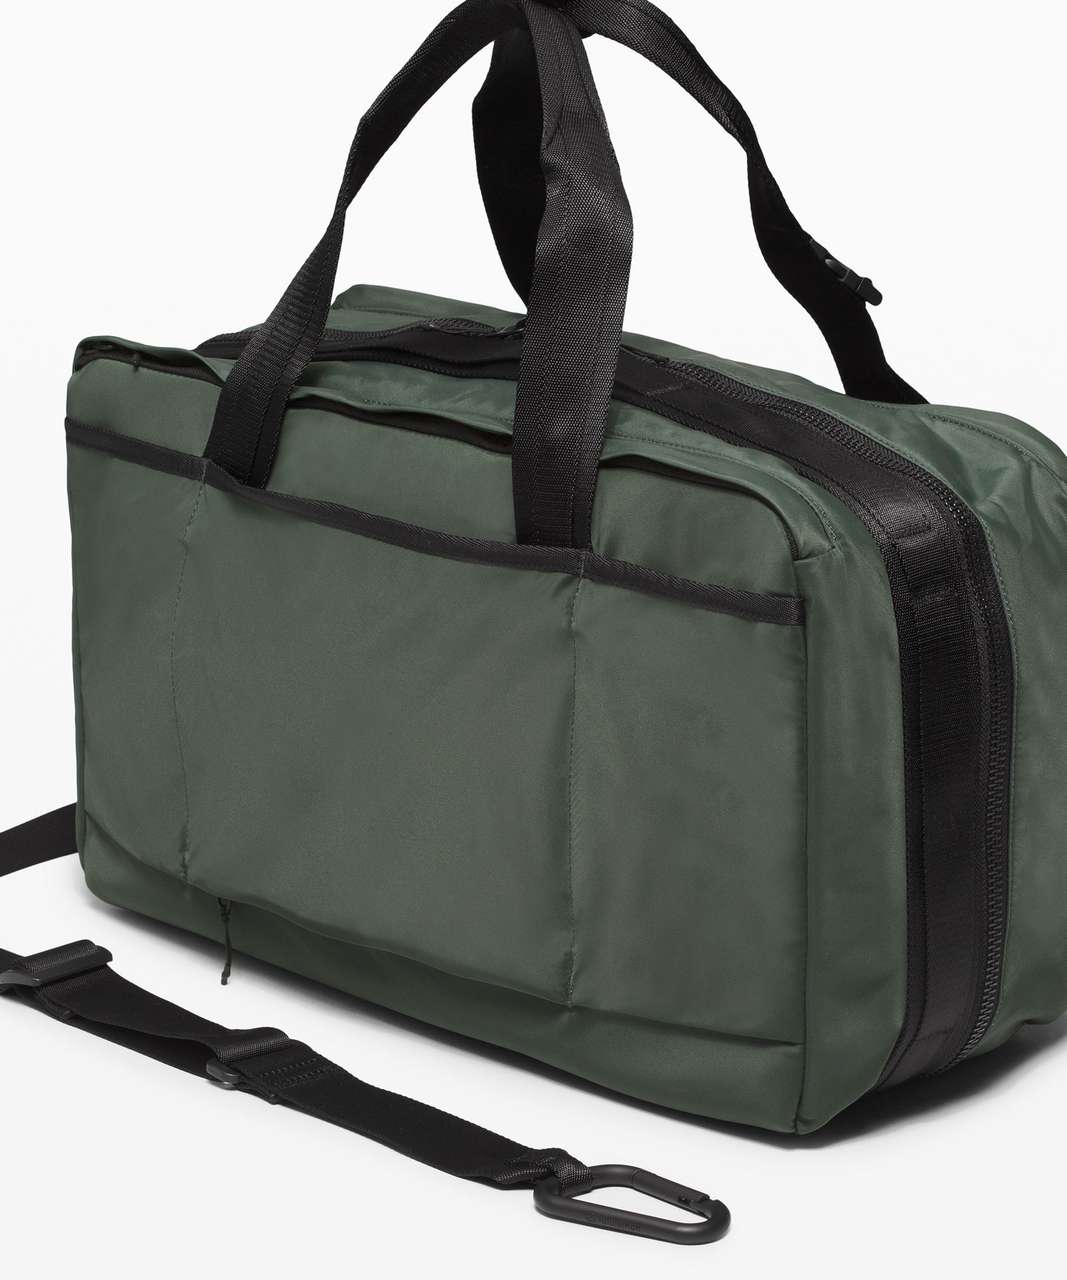 Lululemon Urban Nomad Large Duffle Bag 30L - Smoked Spruce / Black